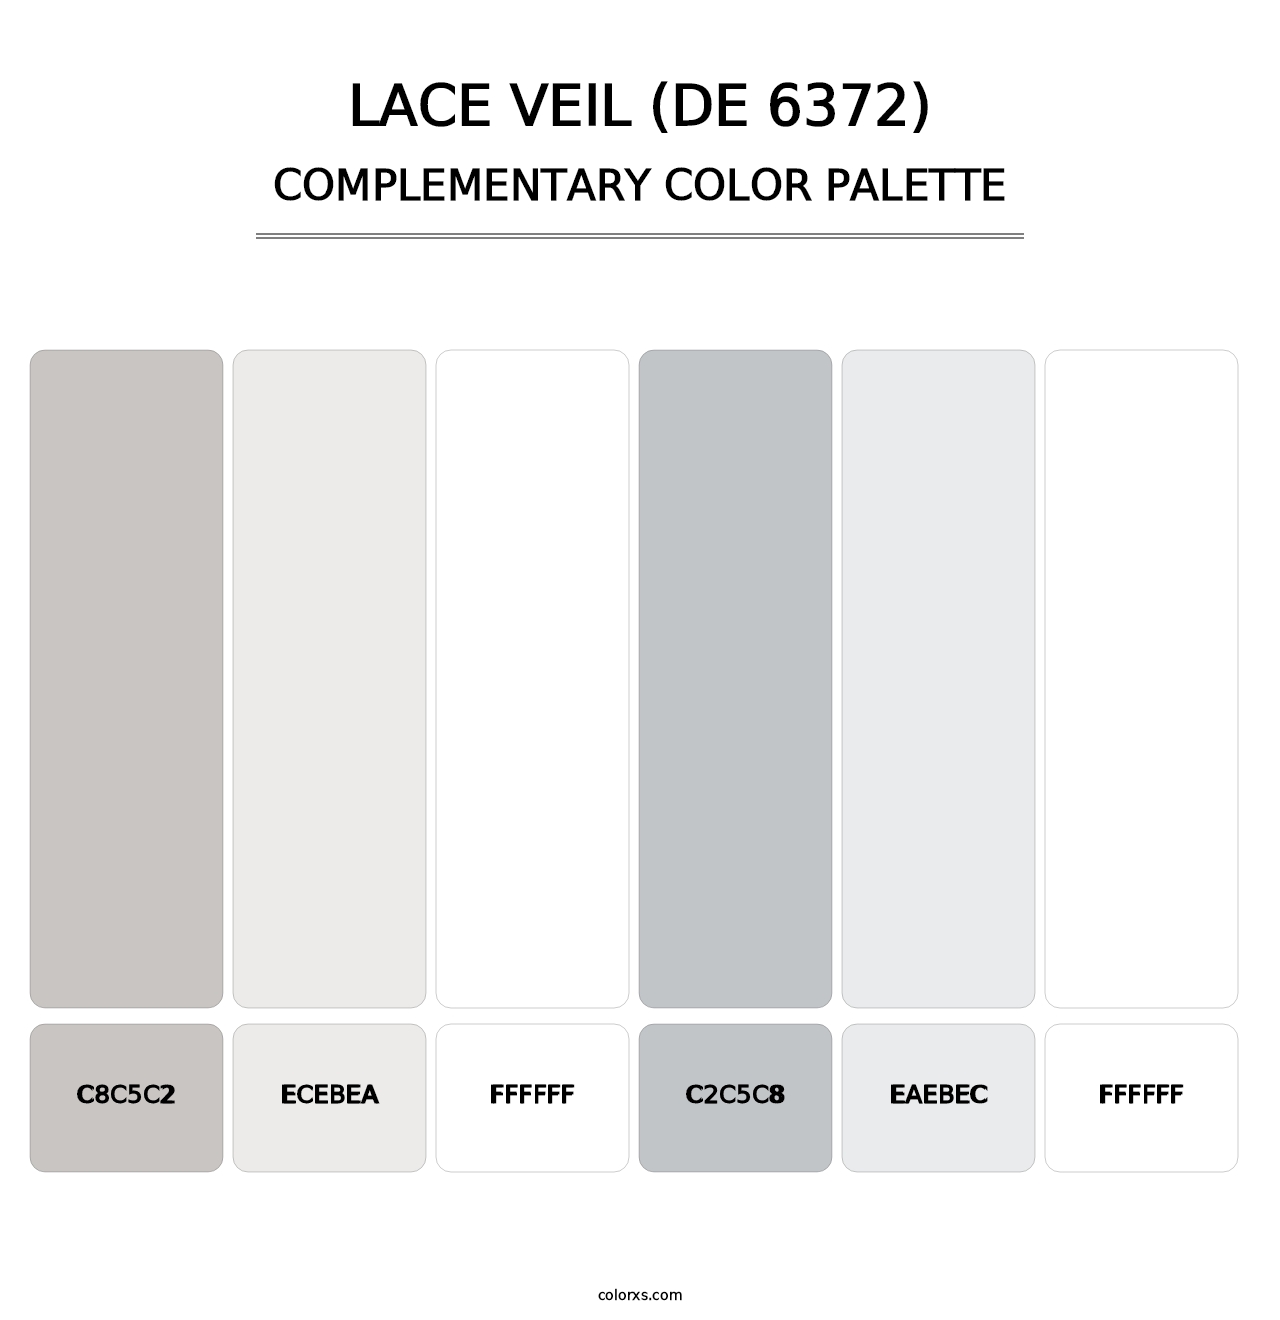 Lace Veil (DE 6372) - Complementary Color Palette